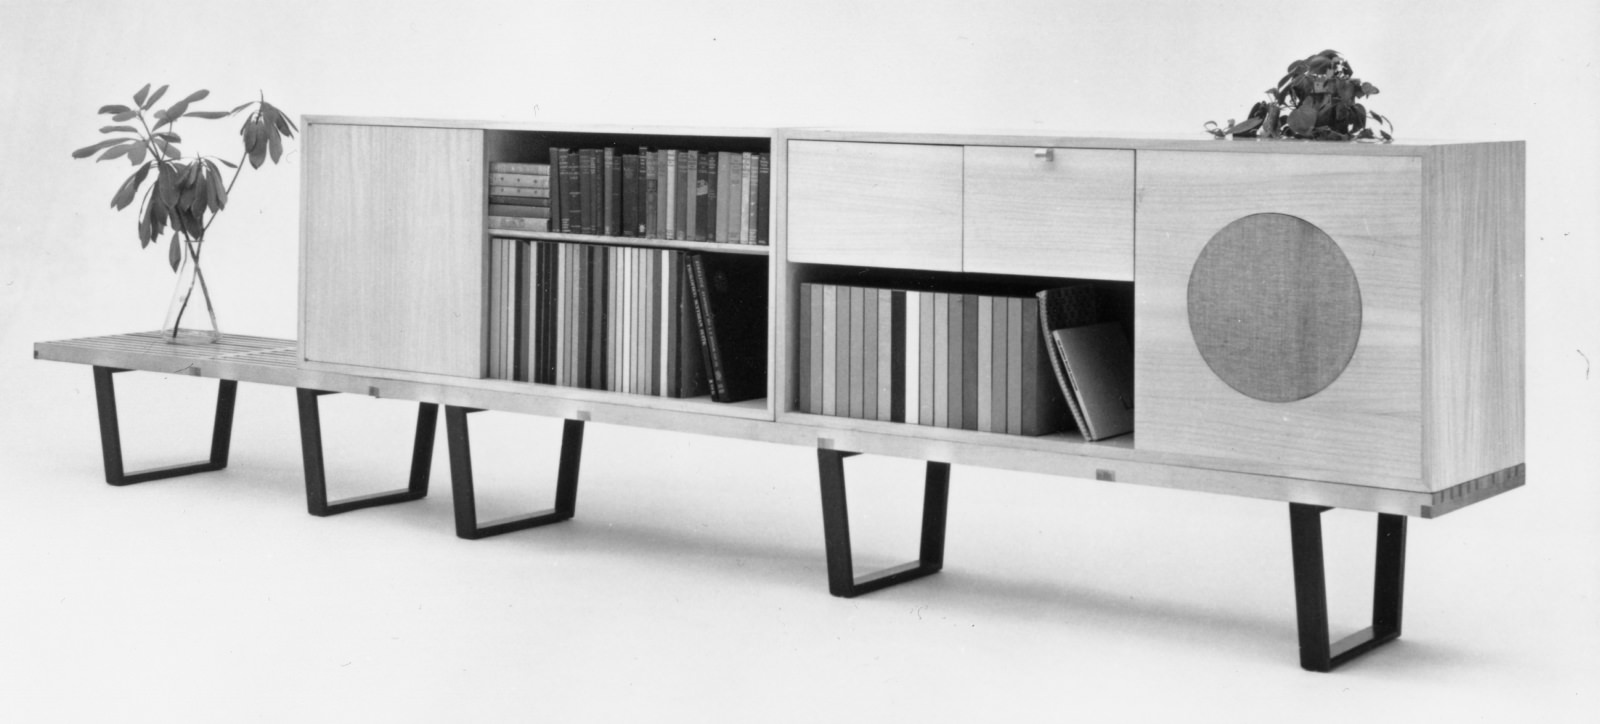 两张并排摆放的Nelson平台长凳支撑着两个书架，其中一个书架上摆着放无线扬声器的柜子。